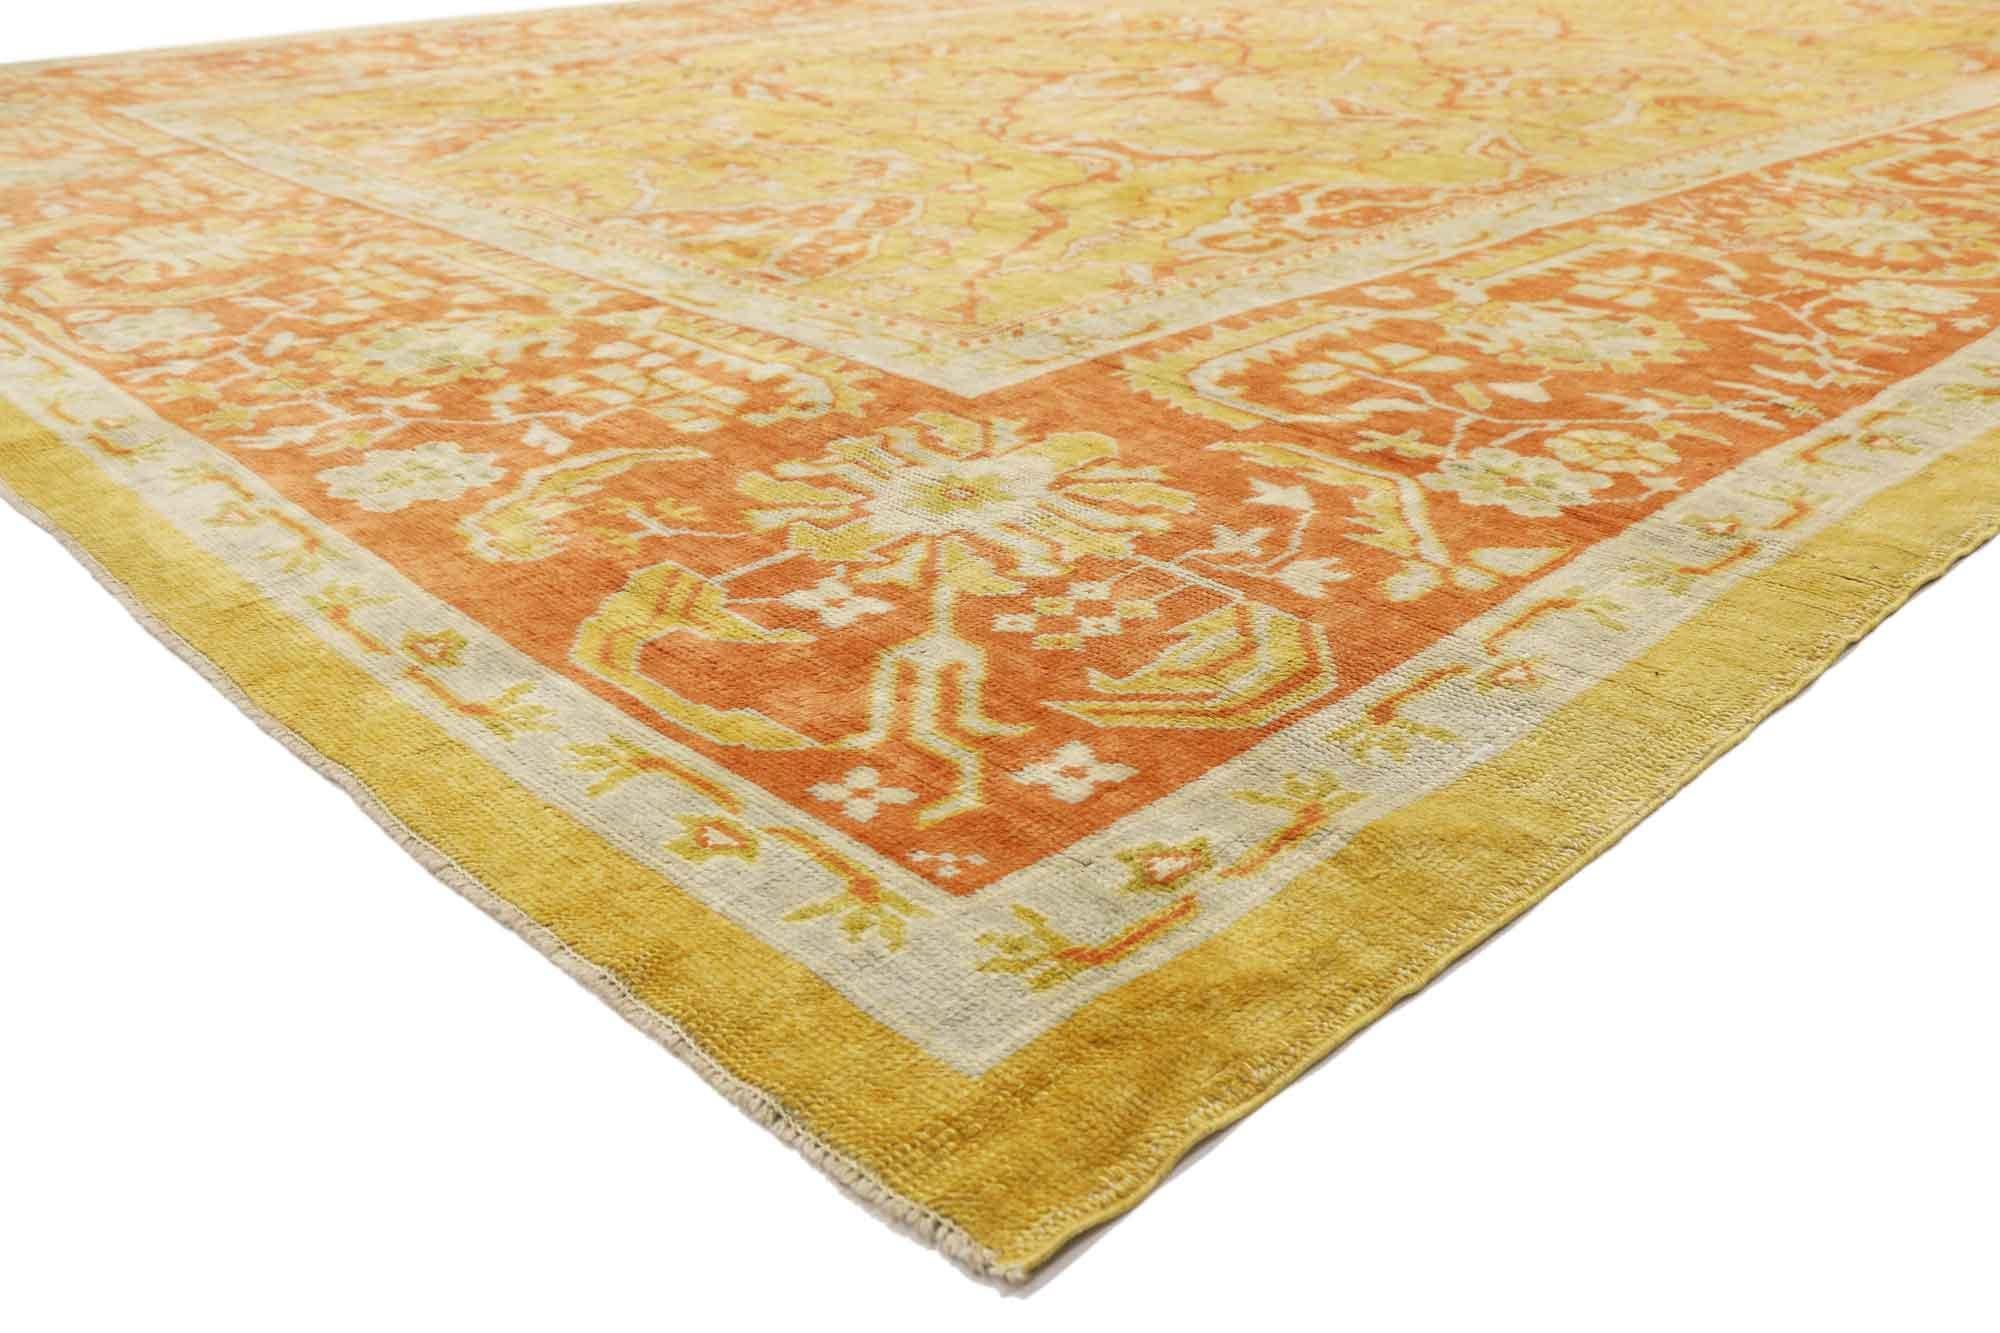 52426, Nouveau tapis turc Oushak au style italien toscan contemporain. Le jaune doré et le zeste d'orange vibrant sont associés à des teintes neutres pour un équilibre parfait entre audace et subtilité dans ce tapis Oushak turc contemporain en laine